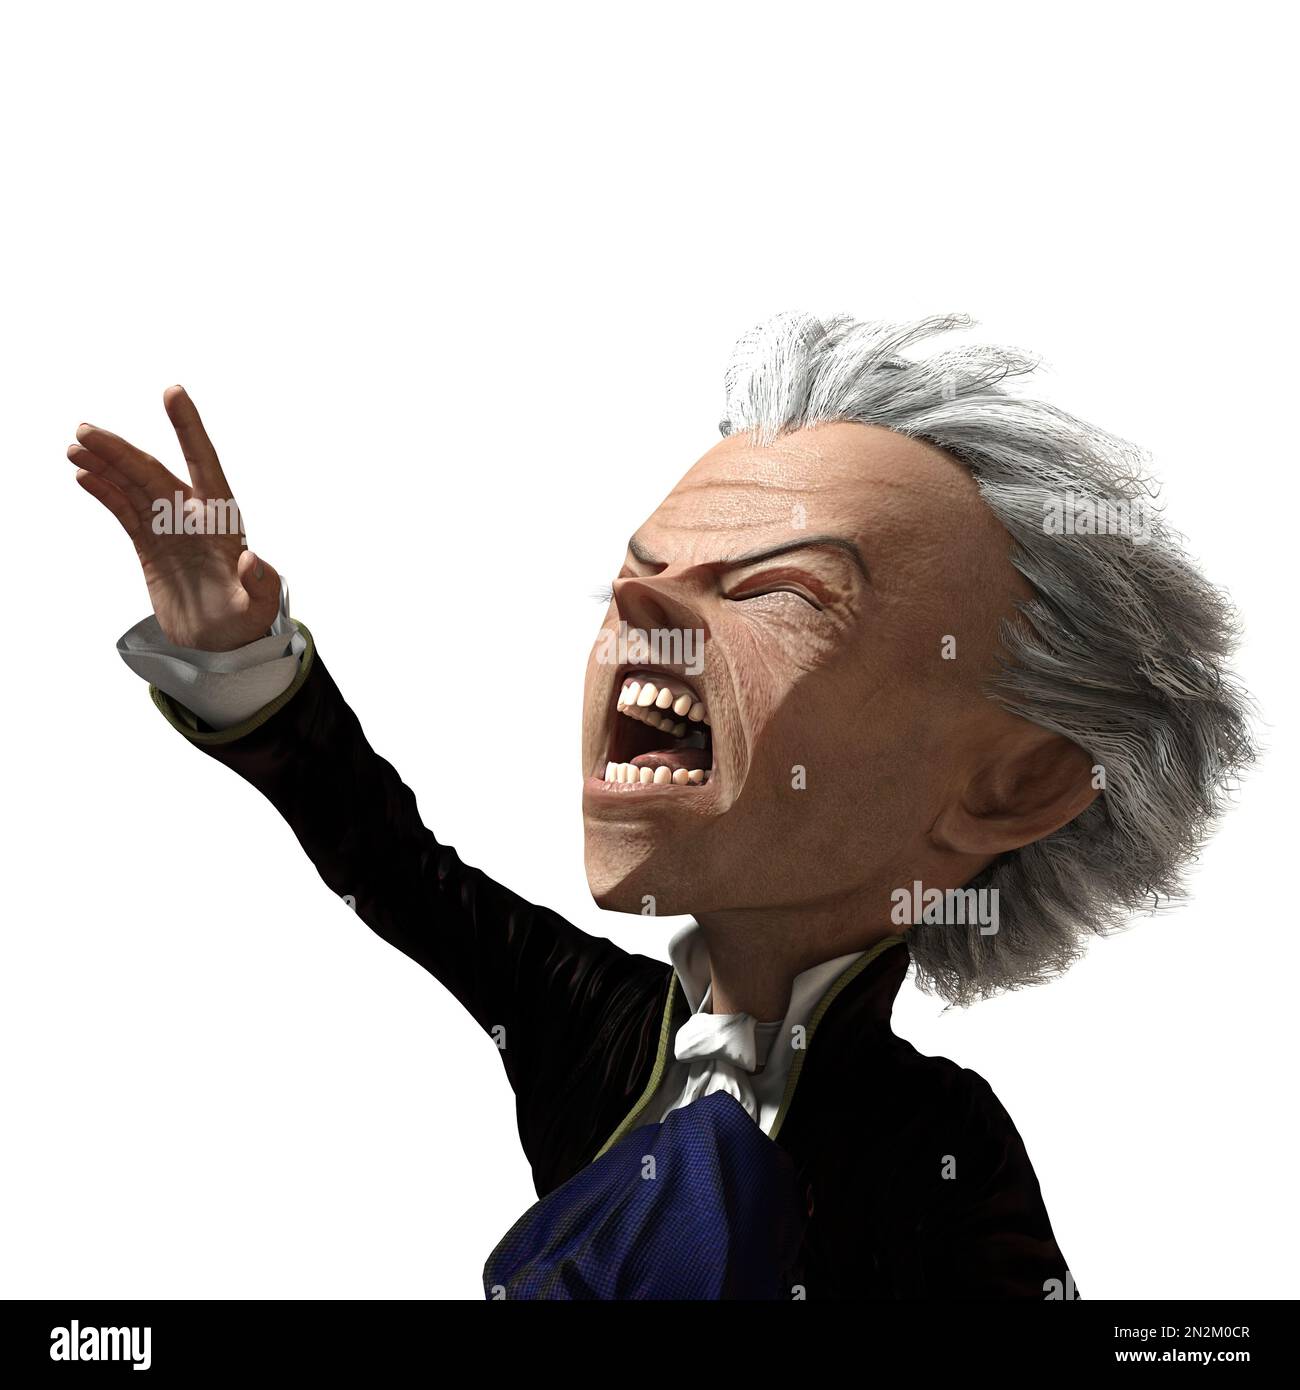 3D-illustration d'un dessin animé mignon et drôle earl vampire avec un visage très angulaire Banque D'Images